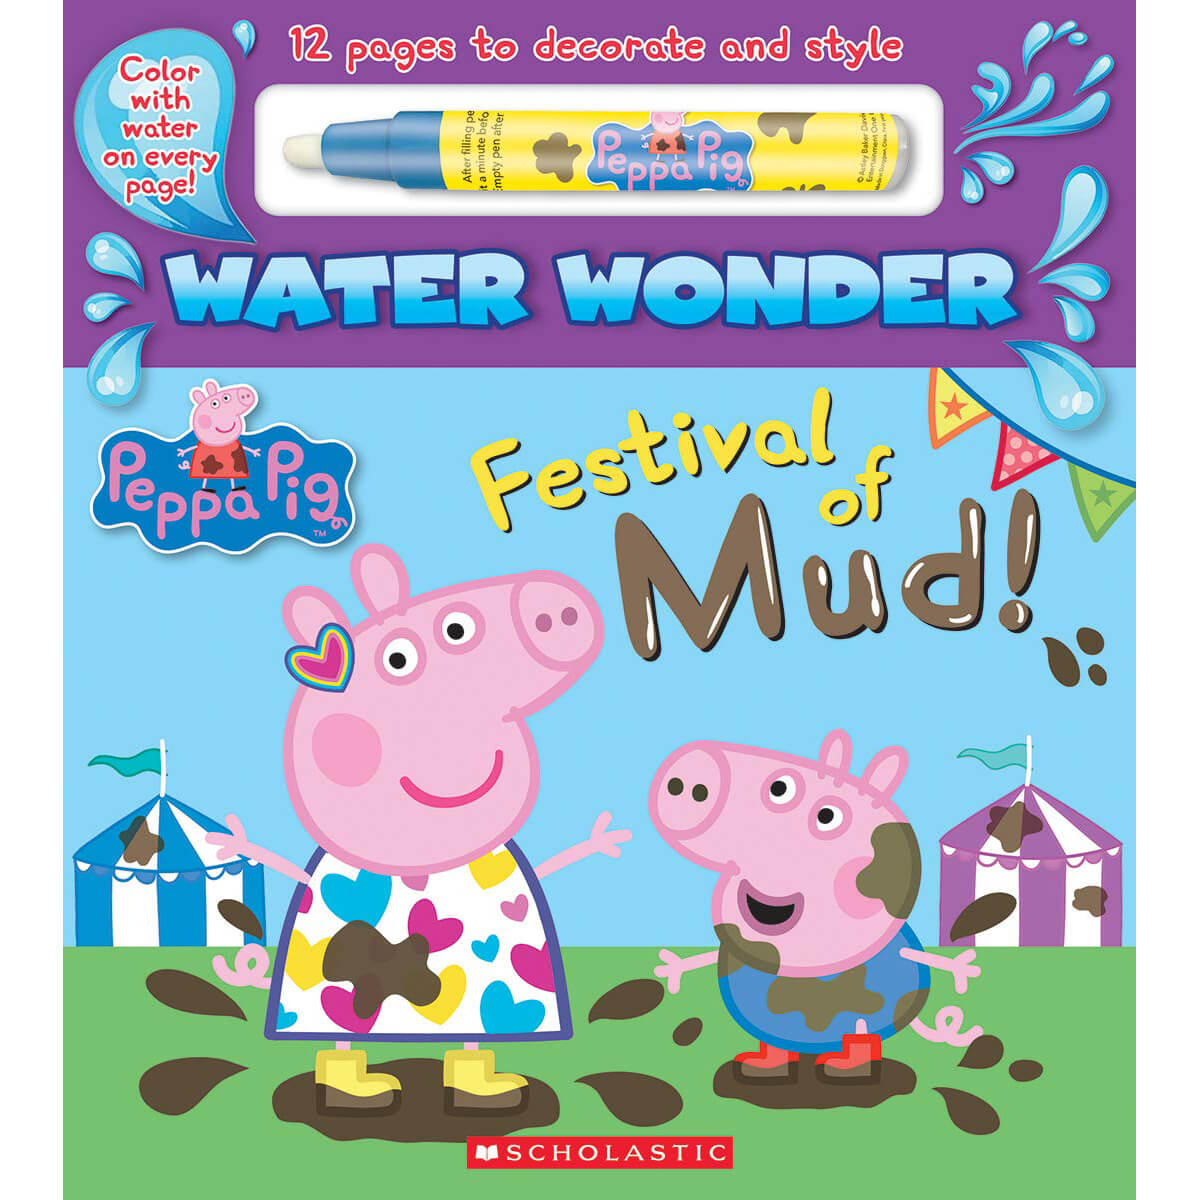 Peppa Pig: Water Wonder: Festival of Mud! (Novelty Book)